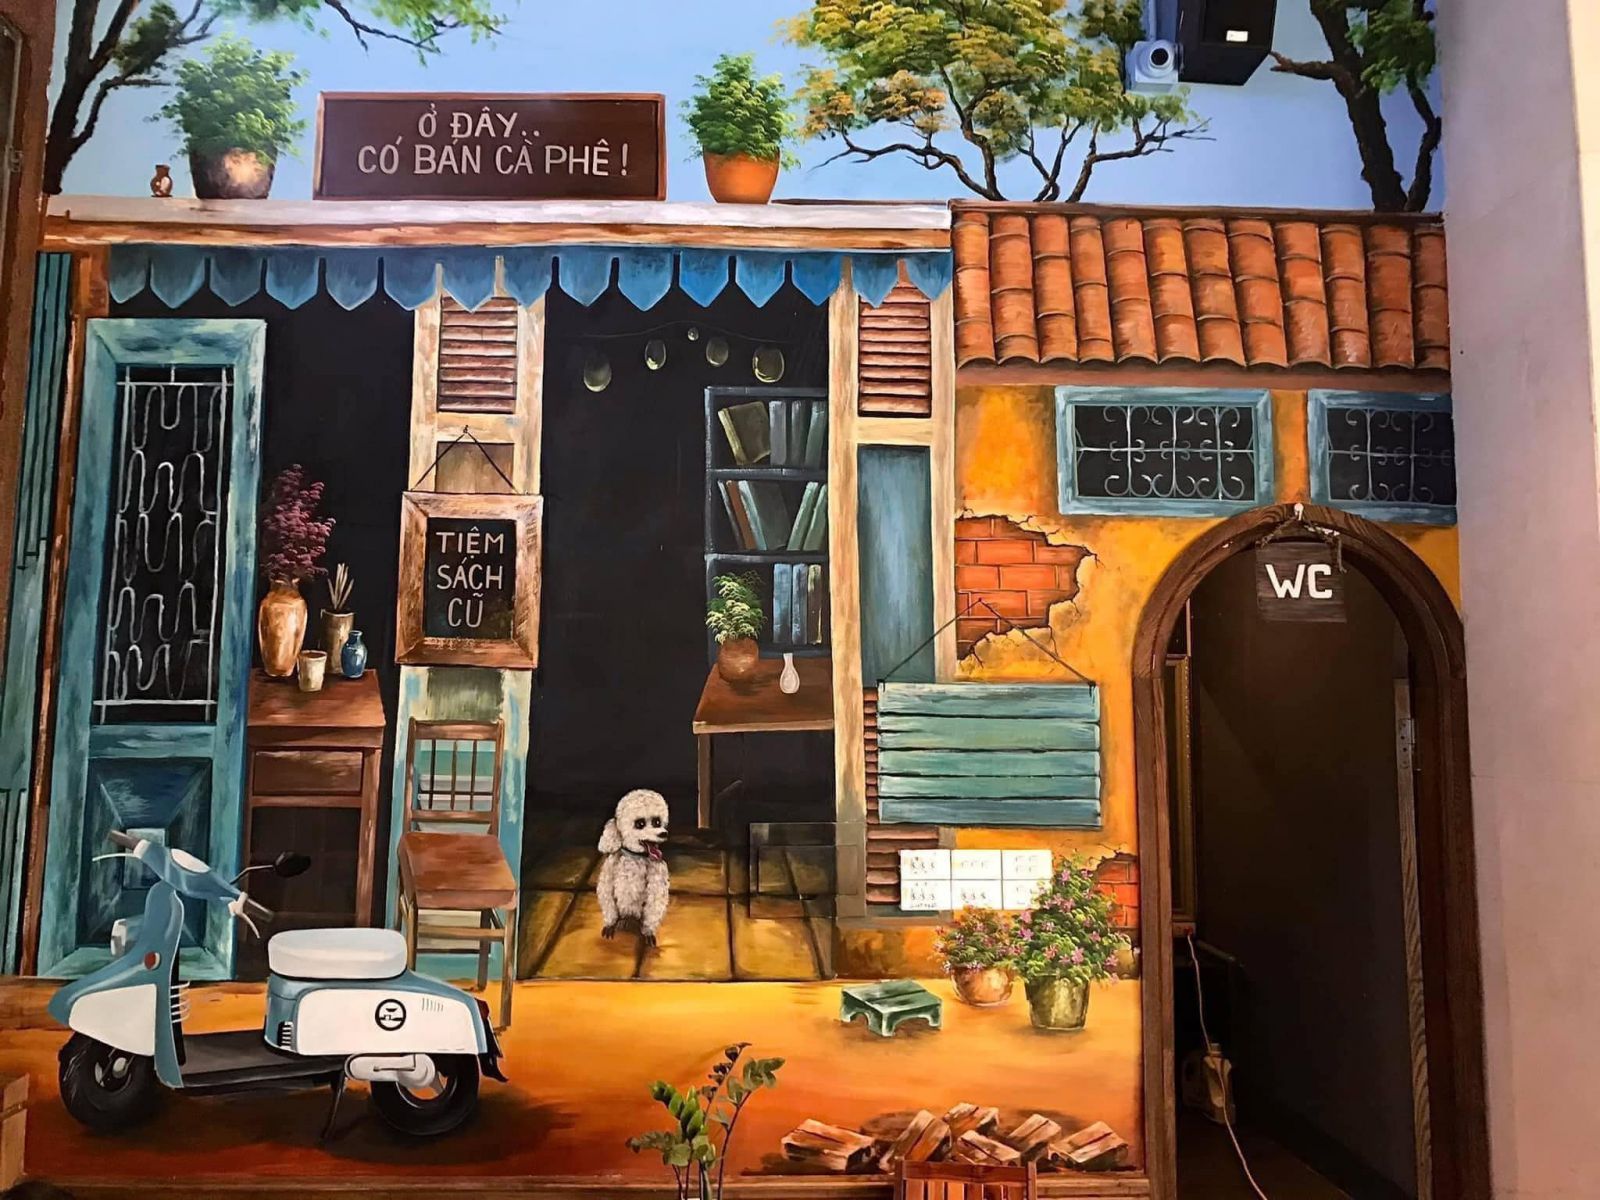 Gợi ý 25 mẫu vẽ tranh tường phố cổ đẹp cho quán cafe, nhà hàng khách sạn